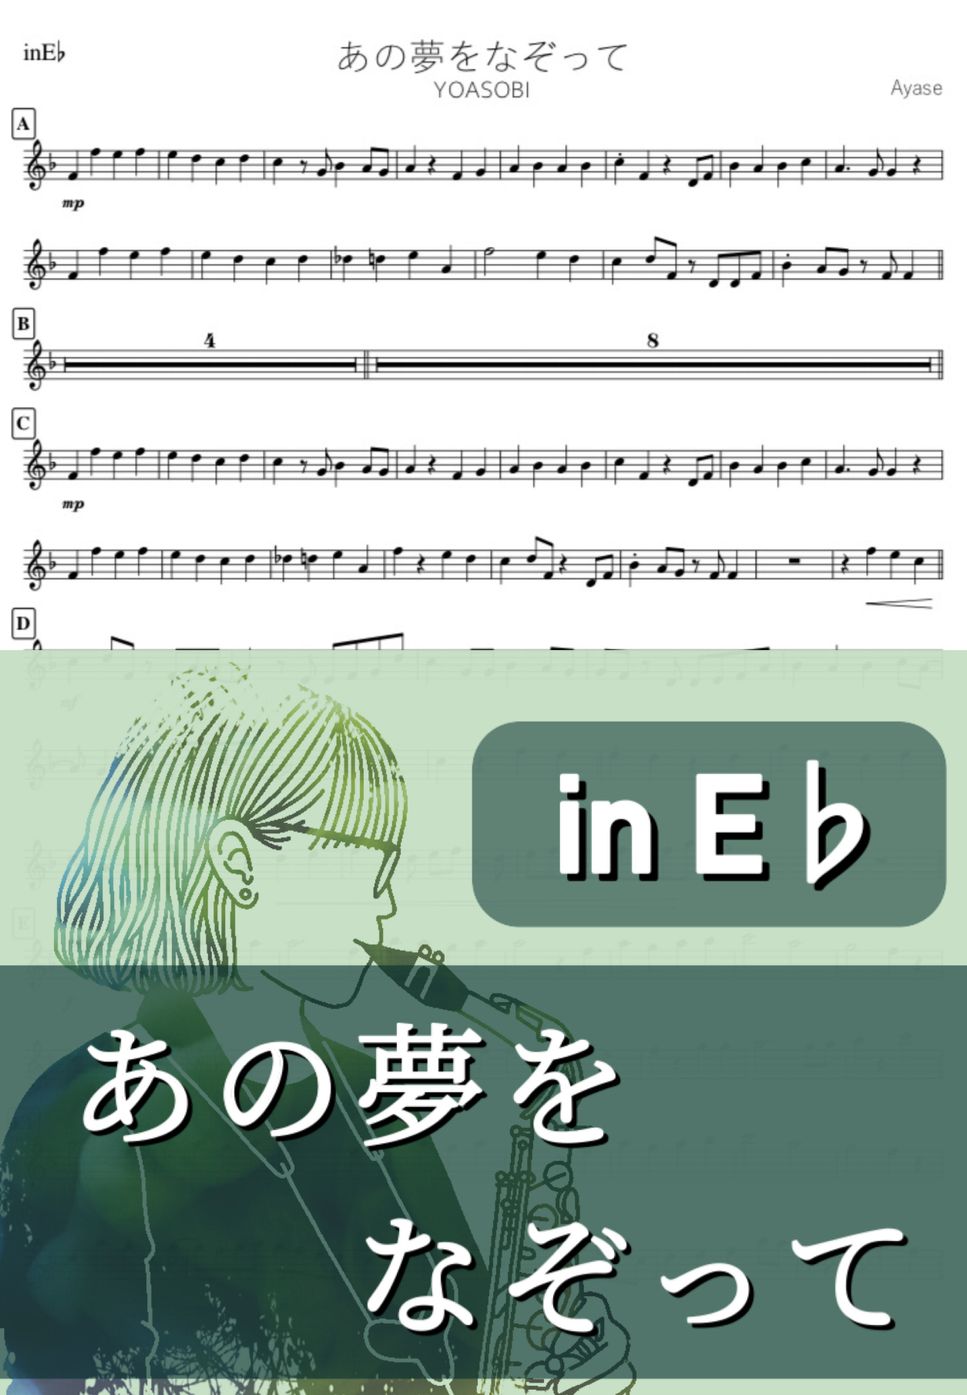 YOASOBI - あの夢をなぞって (E♭) by kanamusic